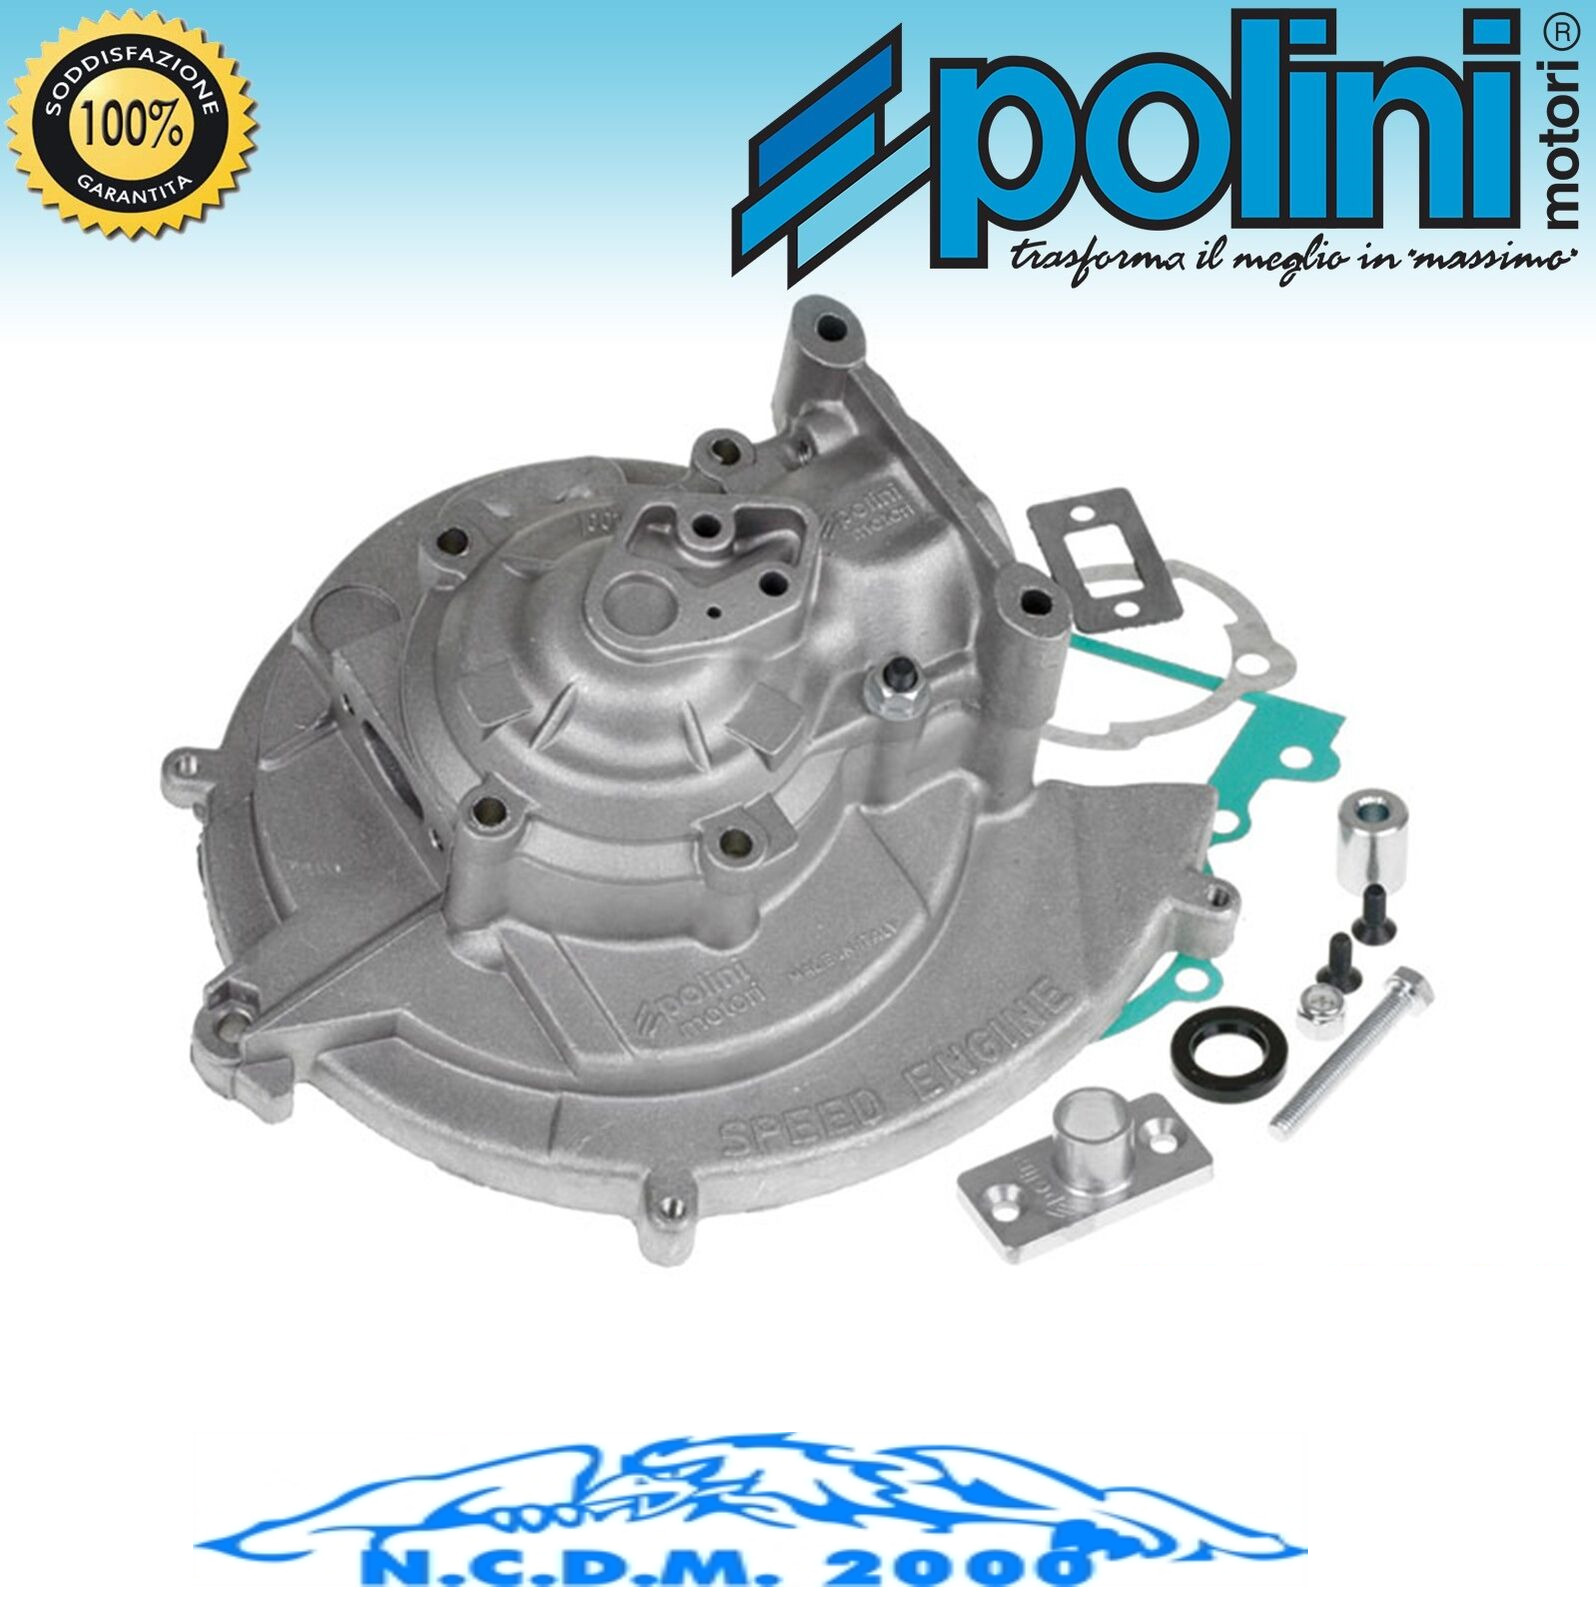 Set Crankcase Engine Polini Complete Pins Ciao Si Bravo Boxer Boss Eco Cba